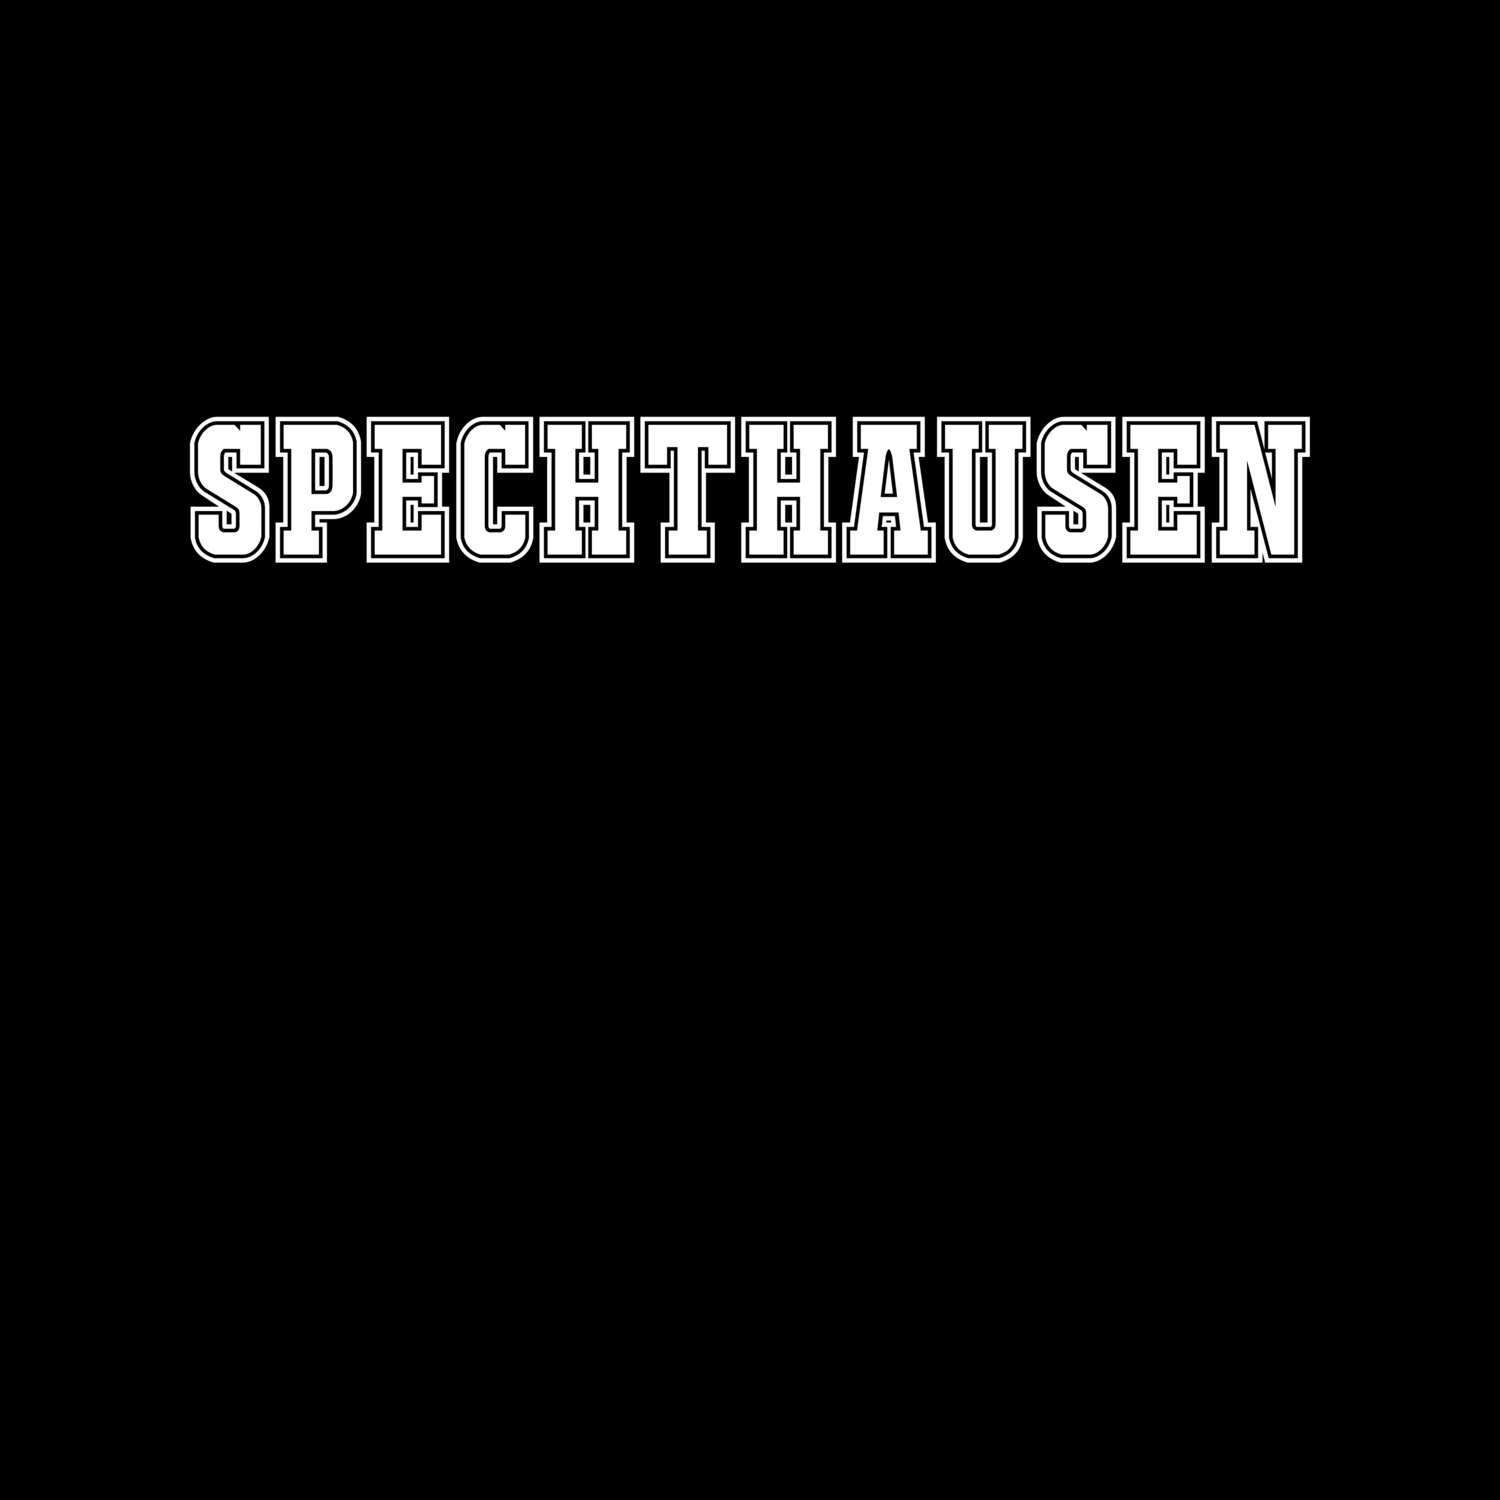 Spechthausen T-Shirt »Classic«